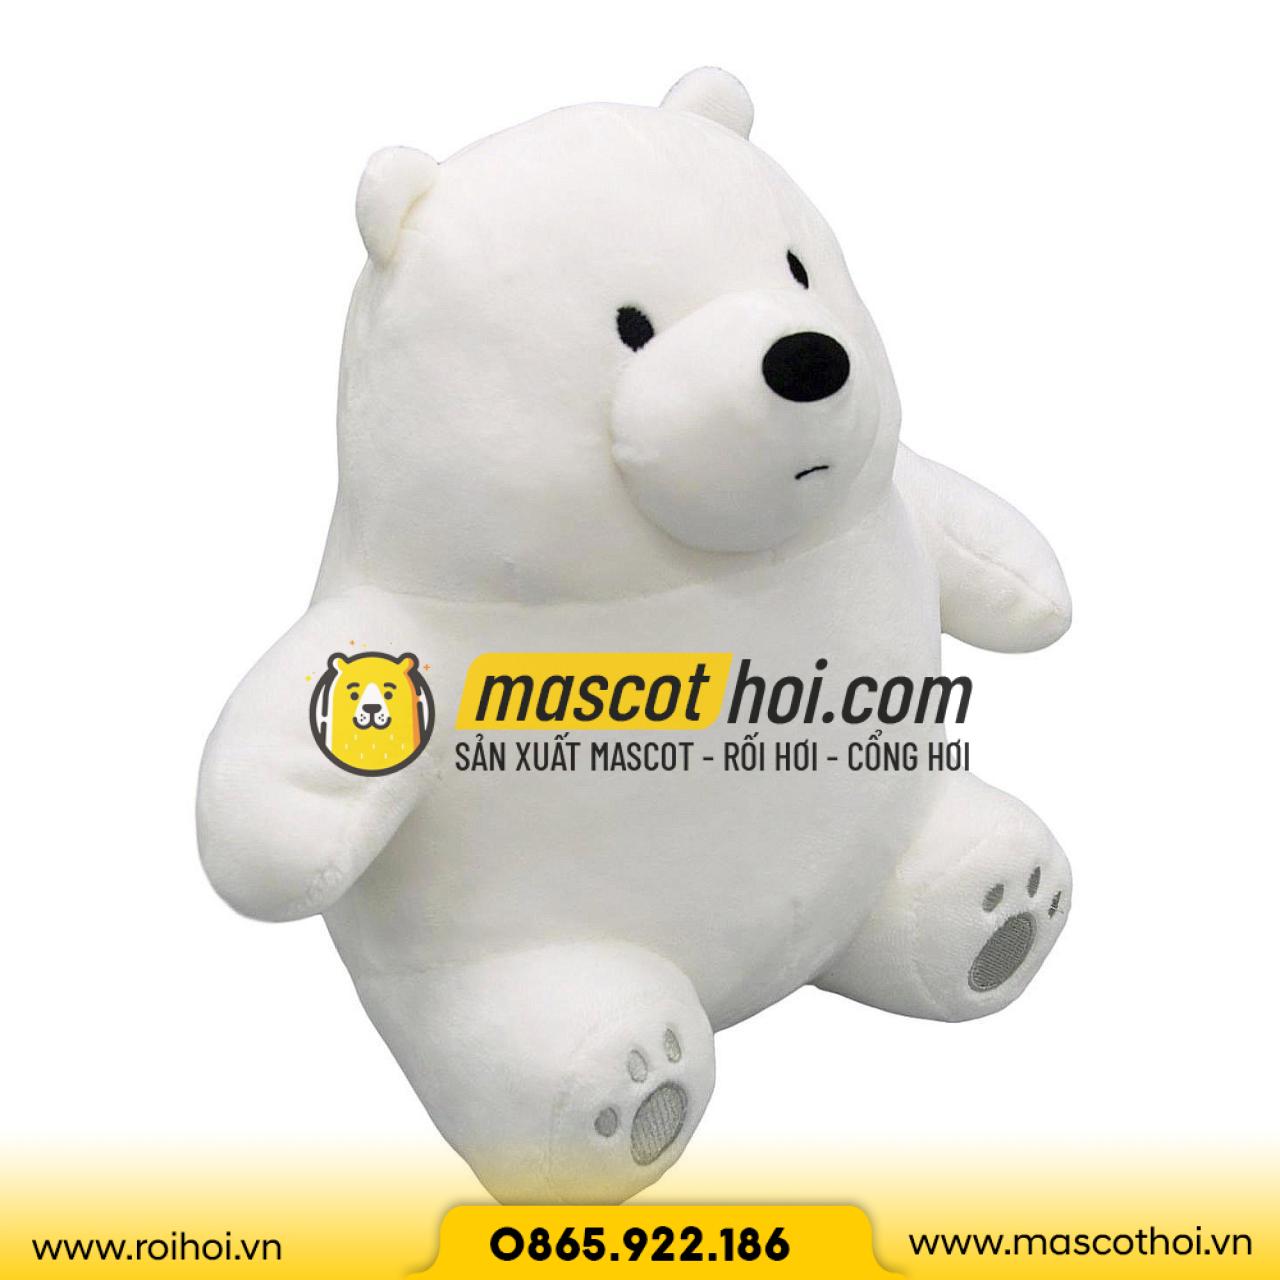 Gấu bông gấu trắng Ice Bear We Bare Bears 28cm dáng ngồi - Thú bông Hãng OEM | EnBac.net